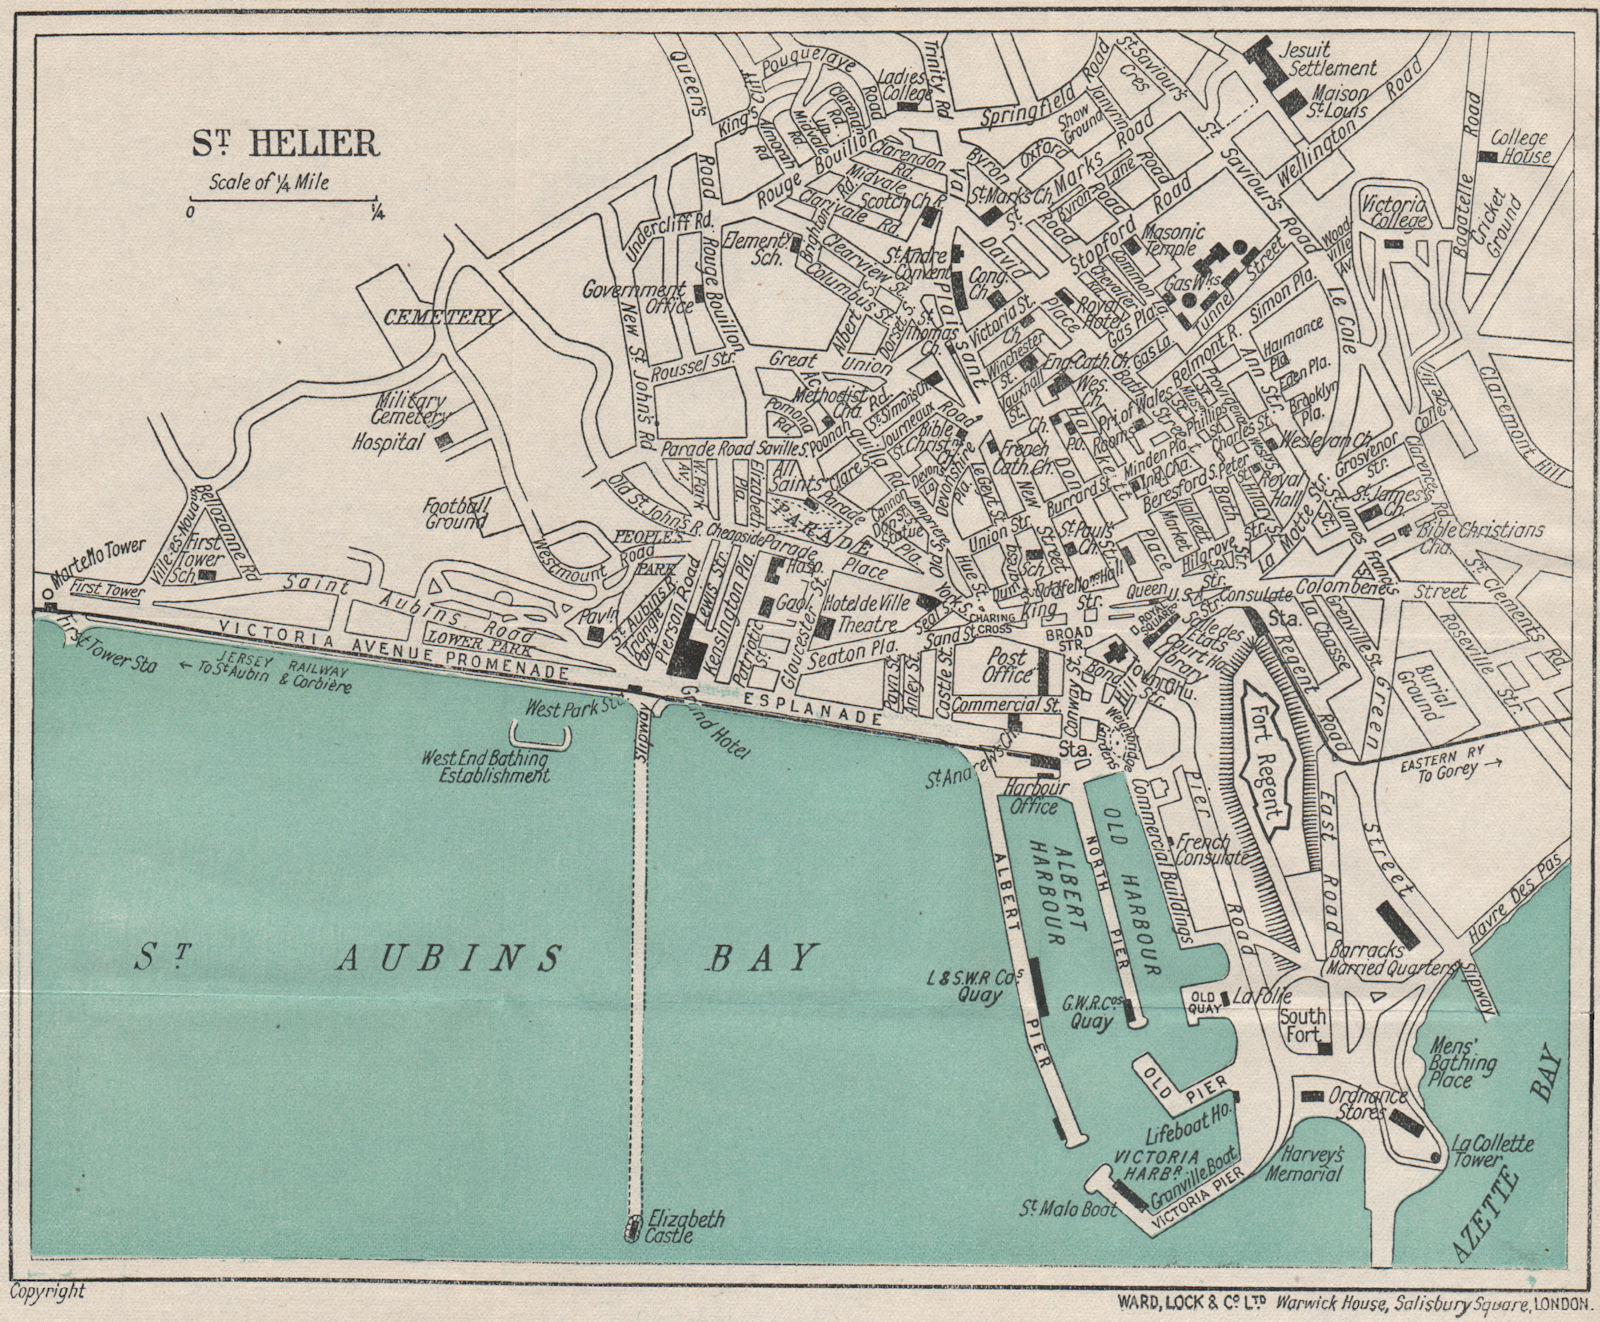 Associate Product ST. HELIER vintage town/city plan. Jersey Channel Islands. WARD LOCK 1921 map